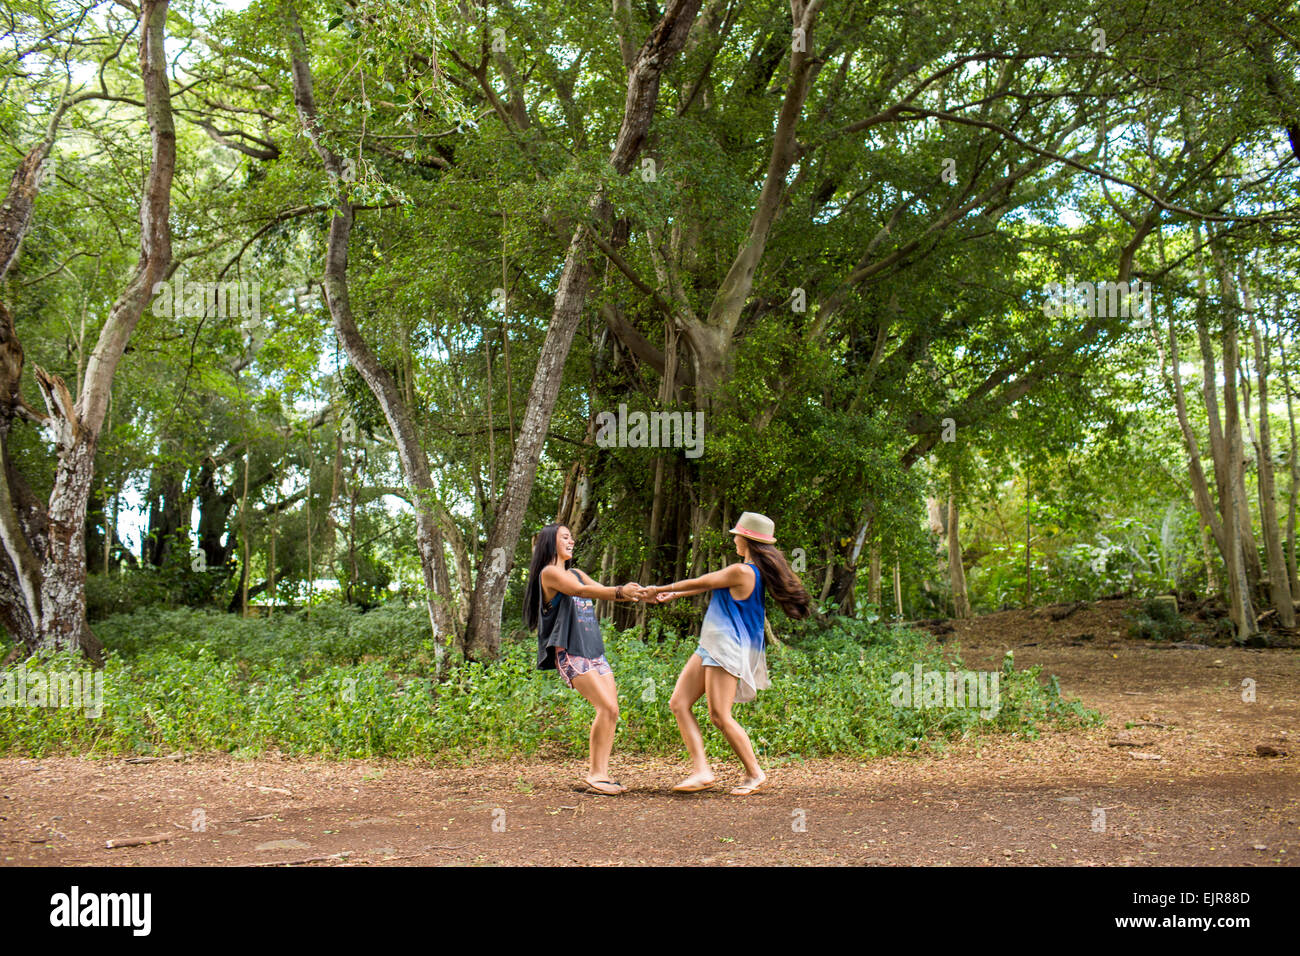 Isleños del Pacífico a las mujeres jugando en el bosque Foto de stock